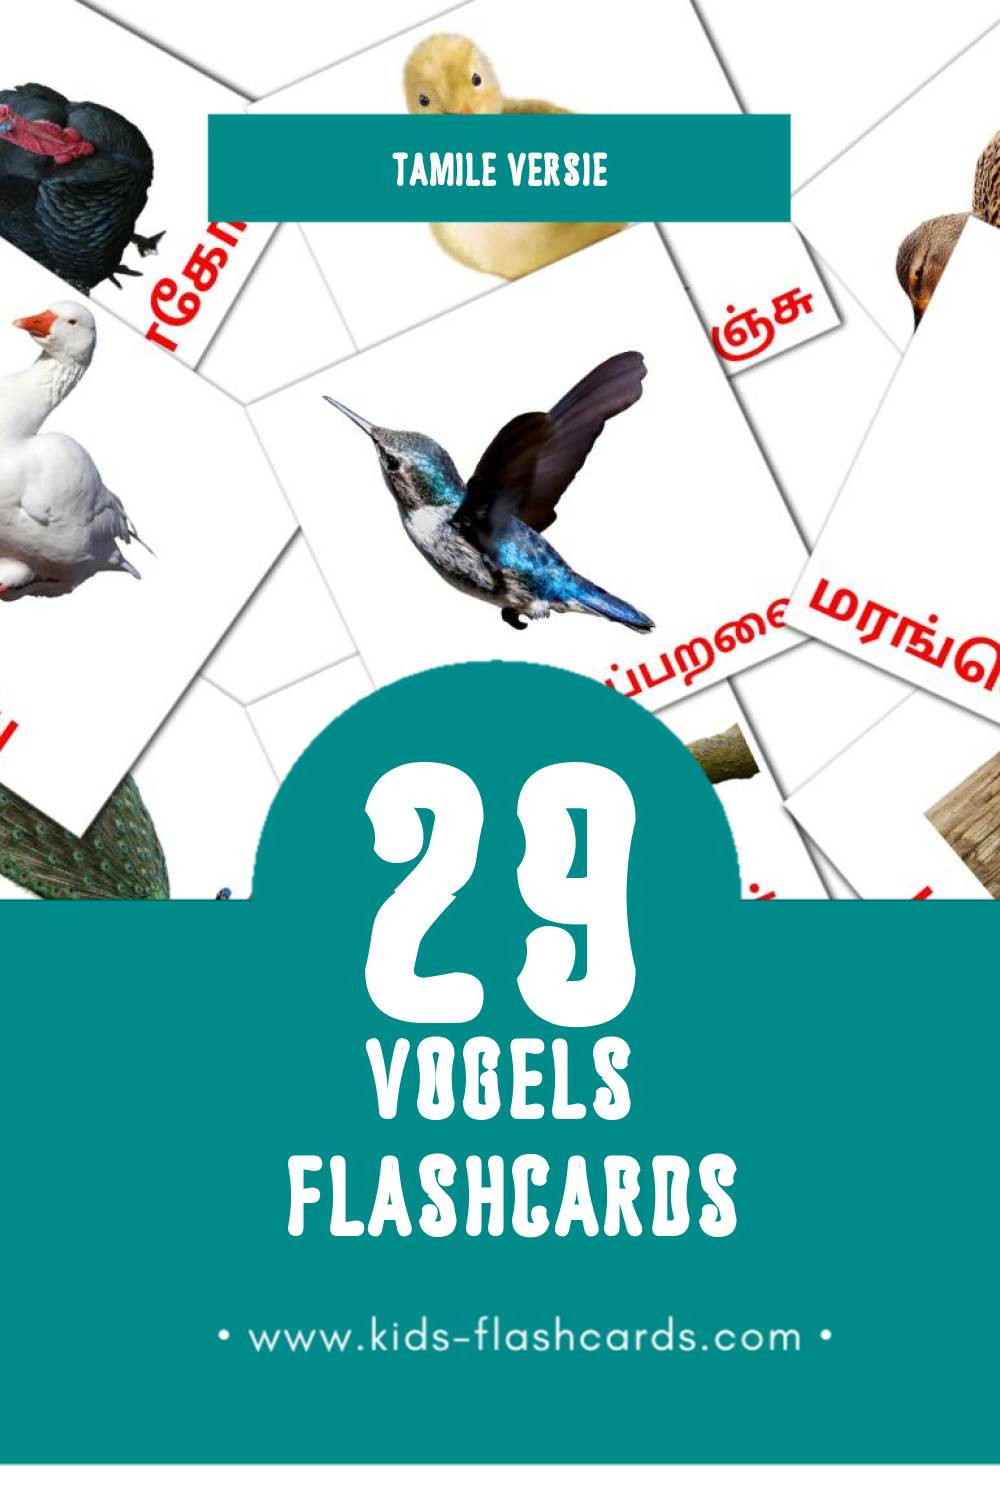 Visuele பறவைகள் Flashcards voor Kleuters (29 kaarten in het Tamil)